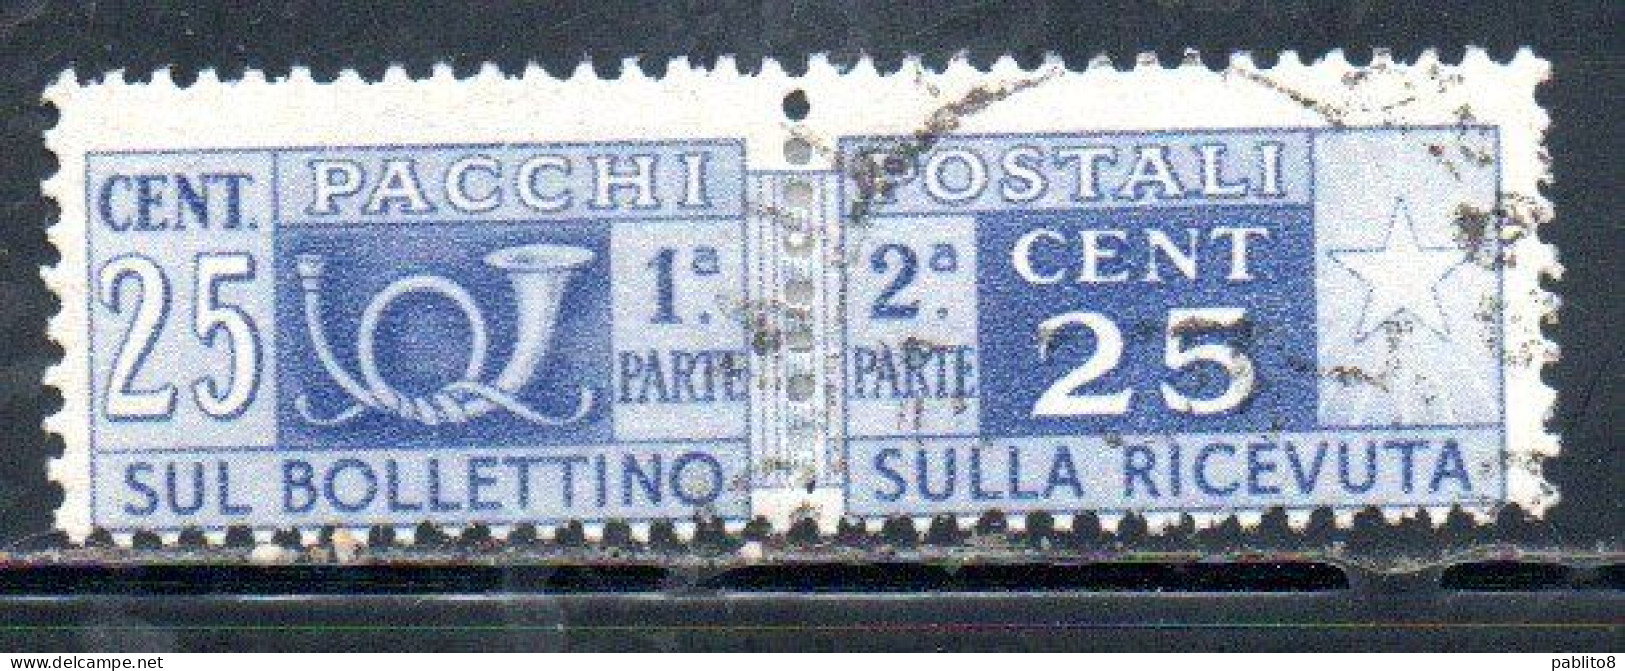 ITALIA REPUBBLICA ITALY REPUBLIC 1946 1951 PACCHI POSTALI PARCEL POST RUOTA WHEEL 1947 CENT. 25c USATO USED OBLITERE' - Postpaketten